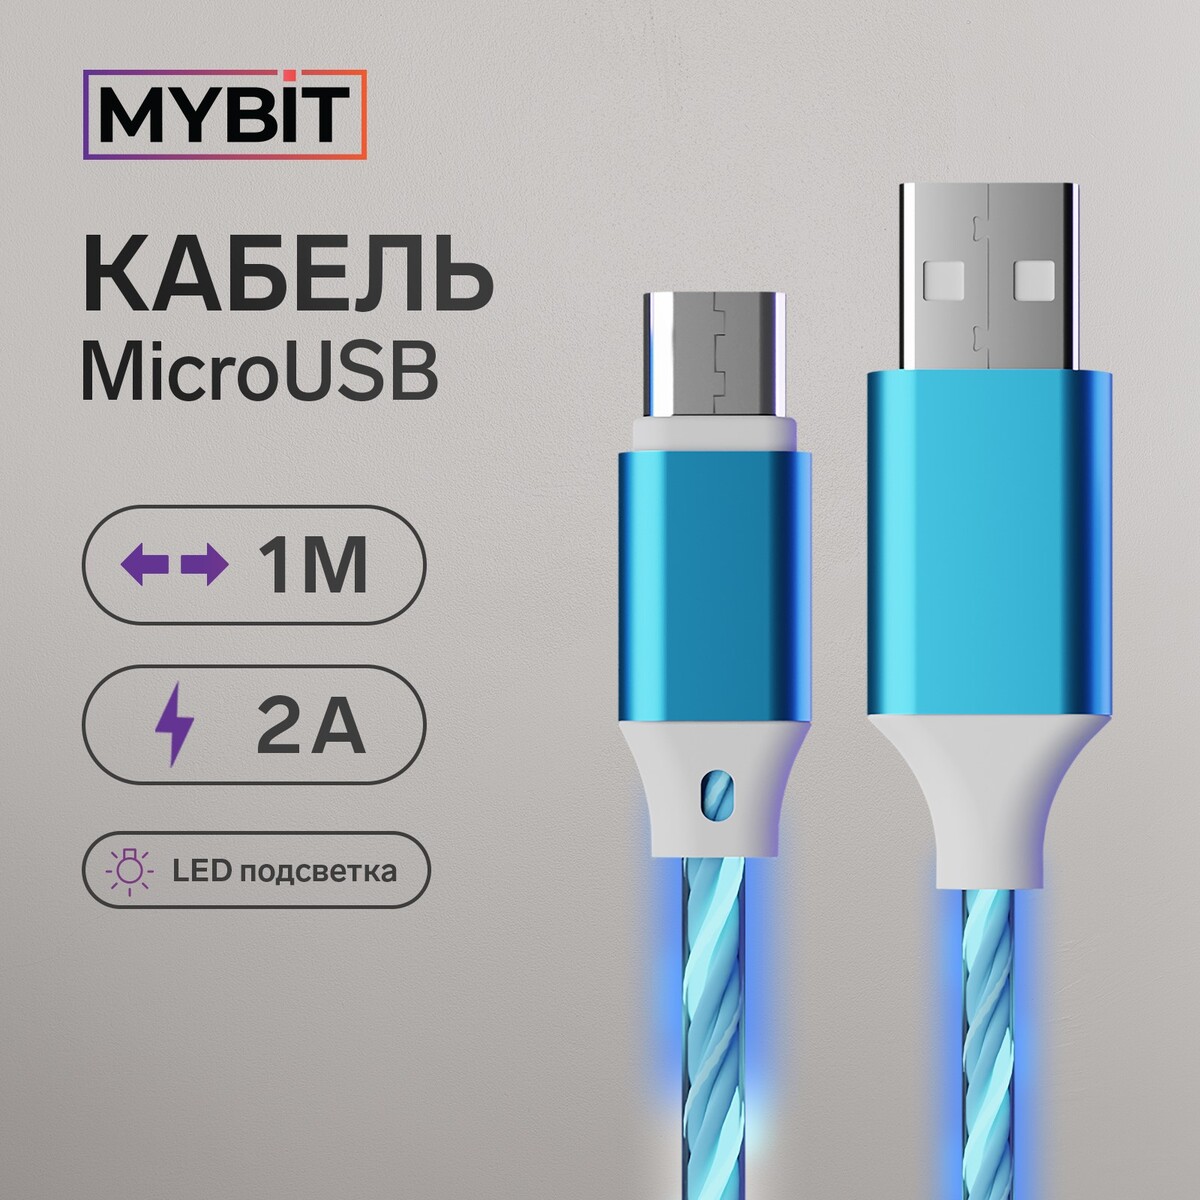 Кабель mybit, microusb - usb, динамическая led подсветка, 2 а, 1 м, только зарядка только для вас избранное